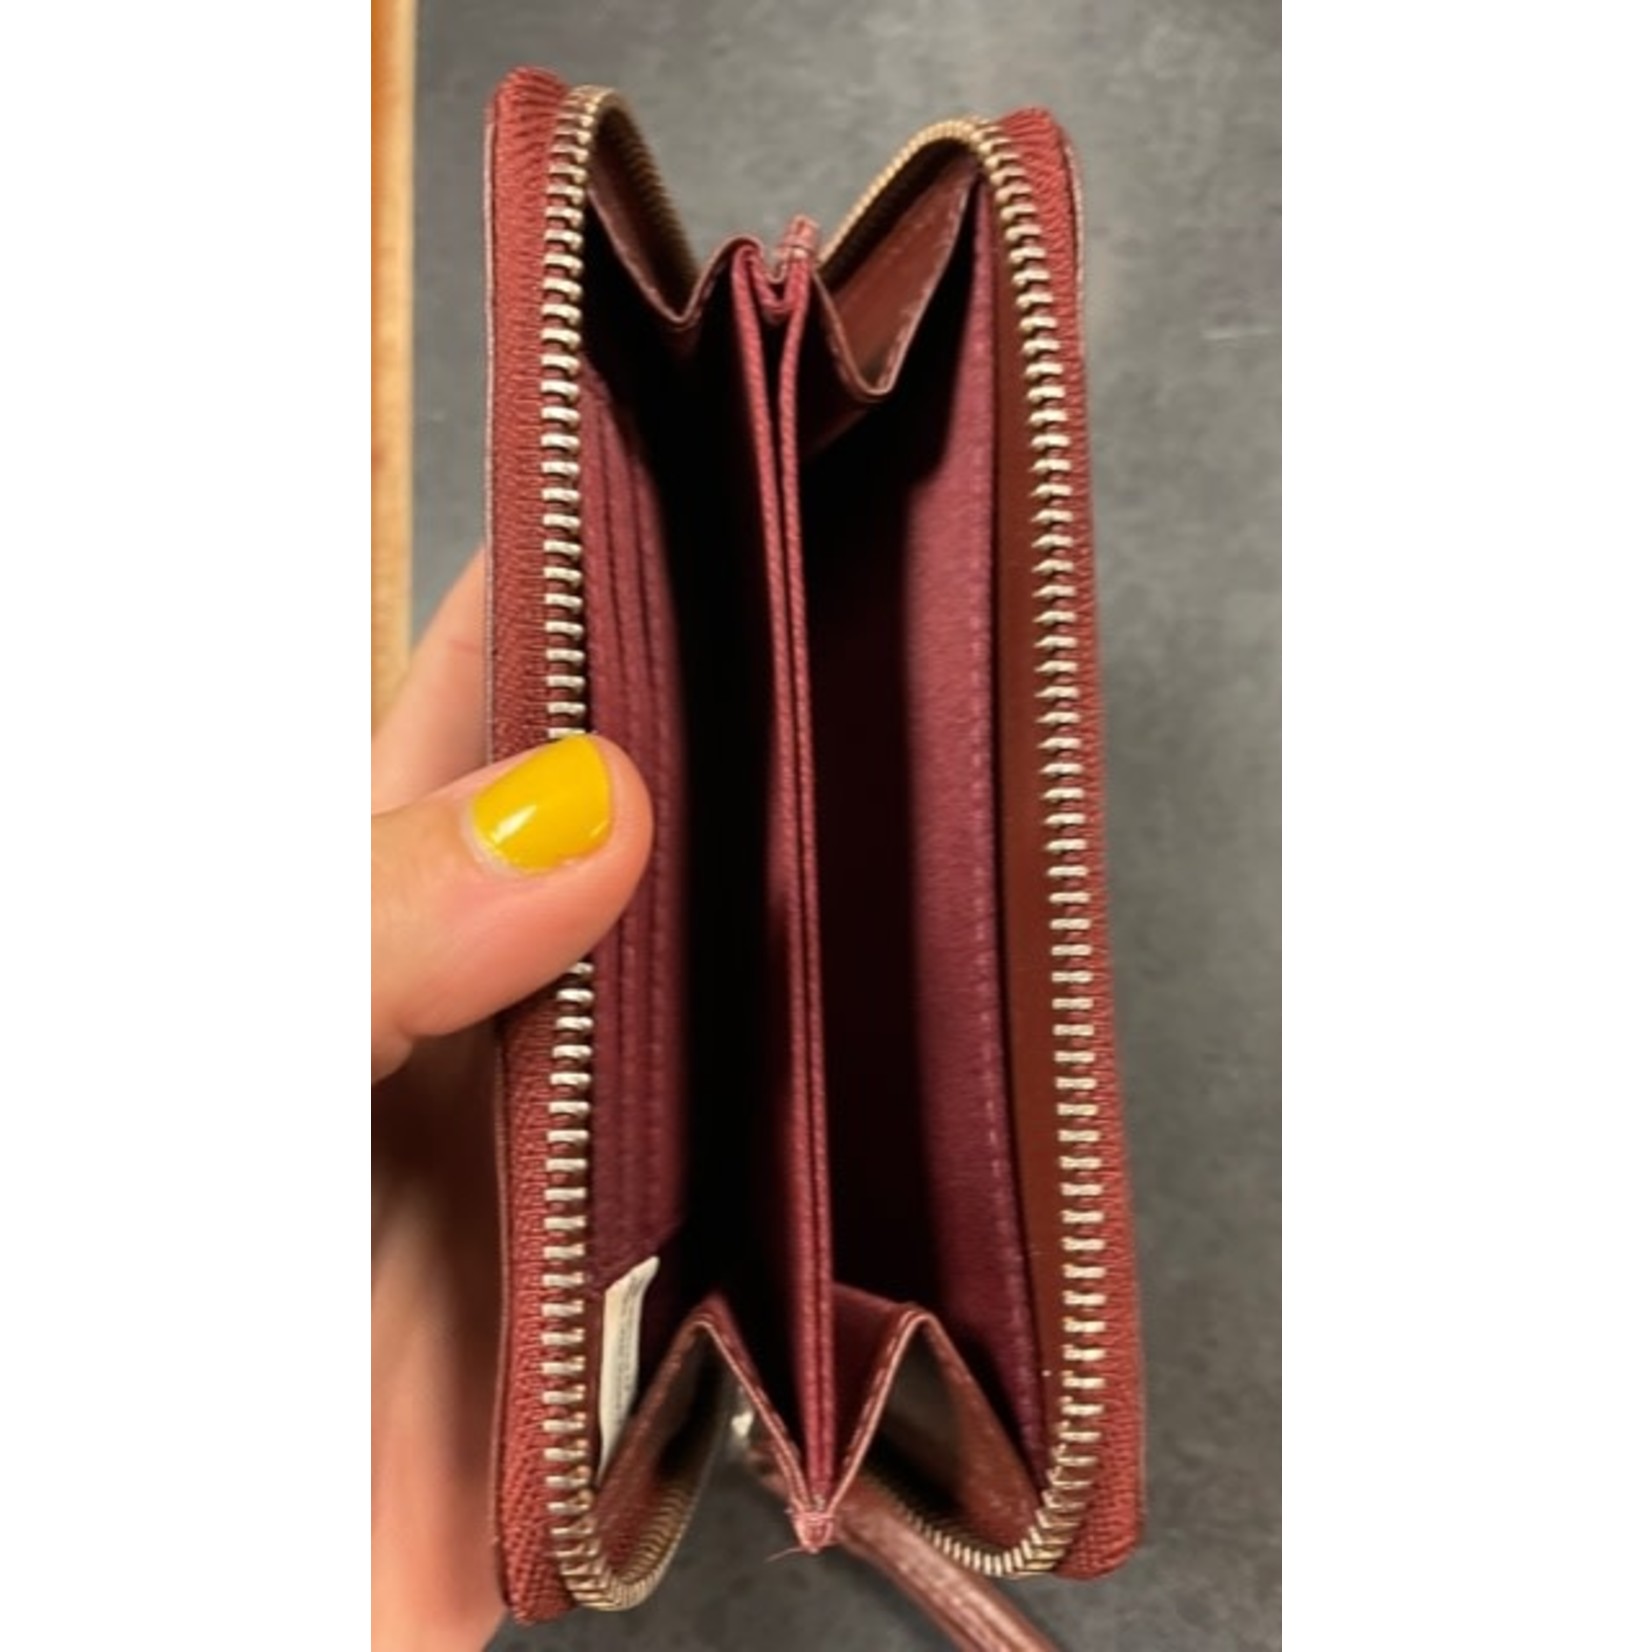 ID Holder clutch/purse/wristlet wallet FINAL SALE CLEARANCE